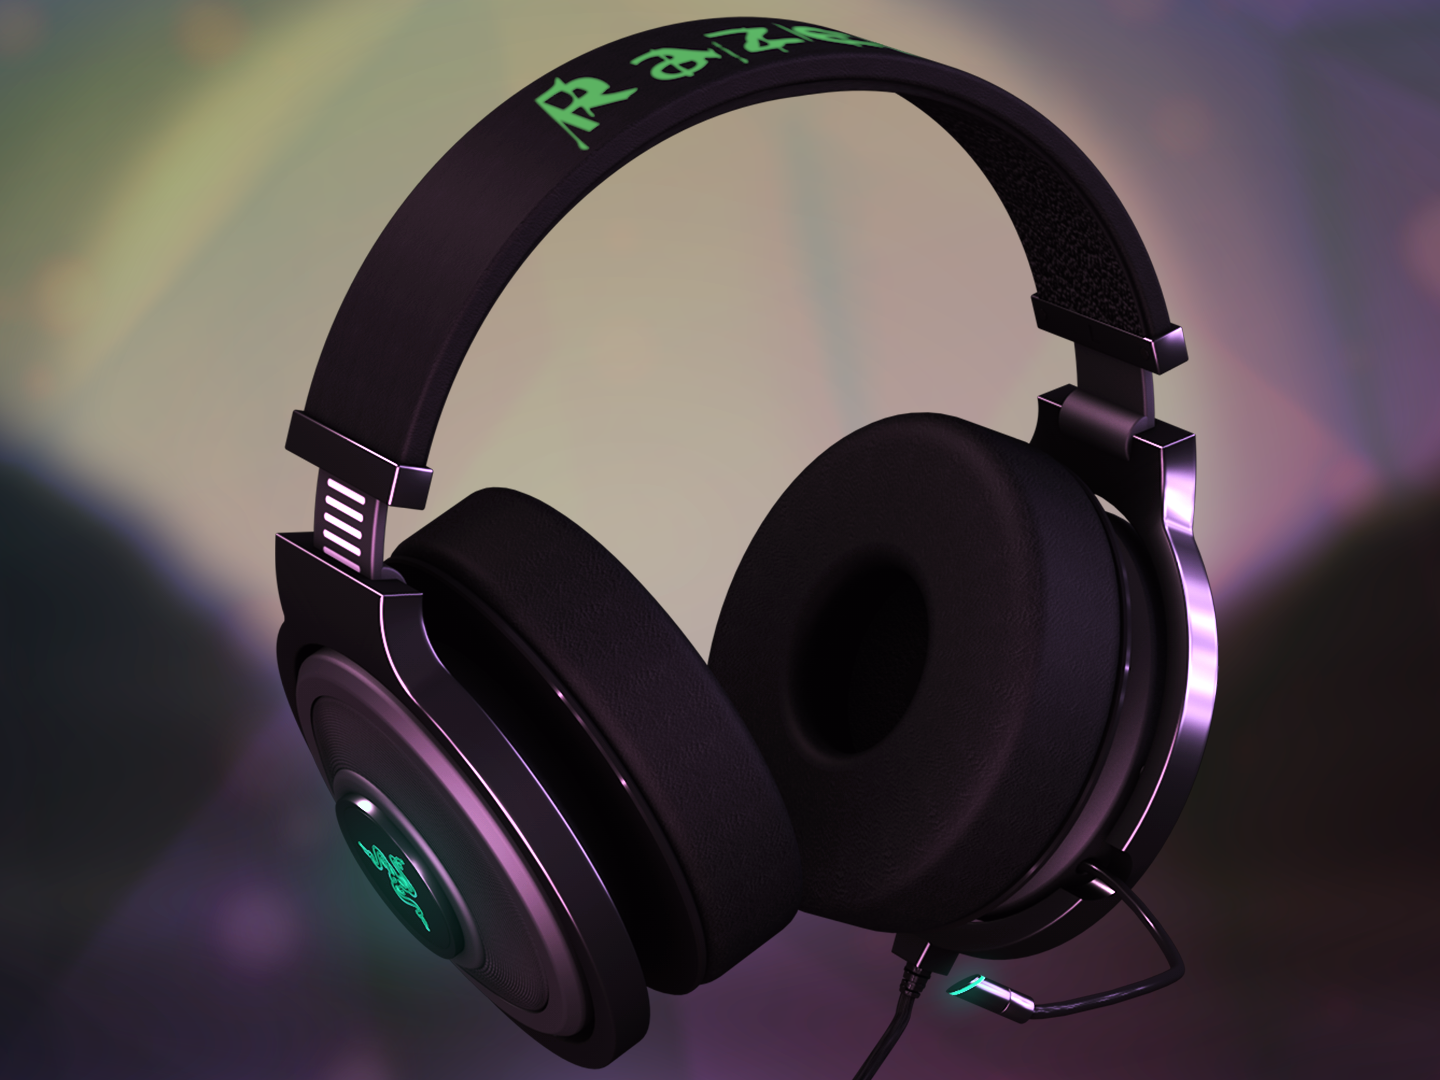 Razer Kraken 7 1 Chroma Headphones 3d Visualisation By Tony Yemelyanov On Dribbble